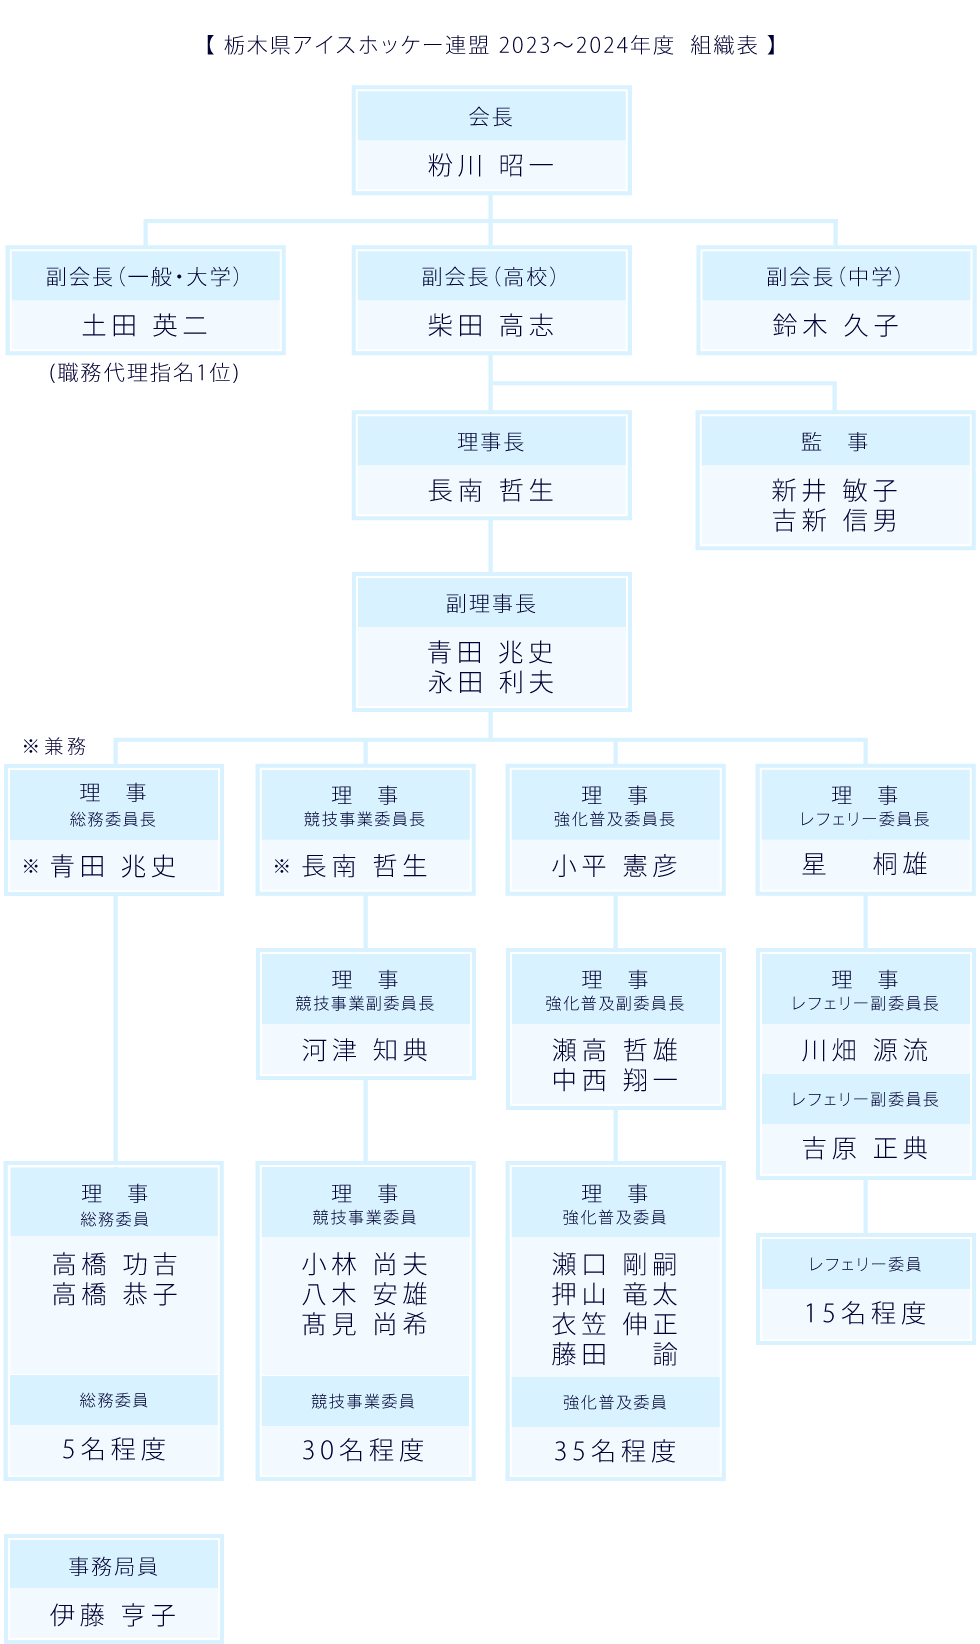 栃木県アイスホッケー連盟 2023〜2024年度  組織表